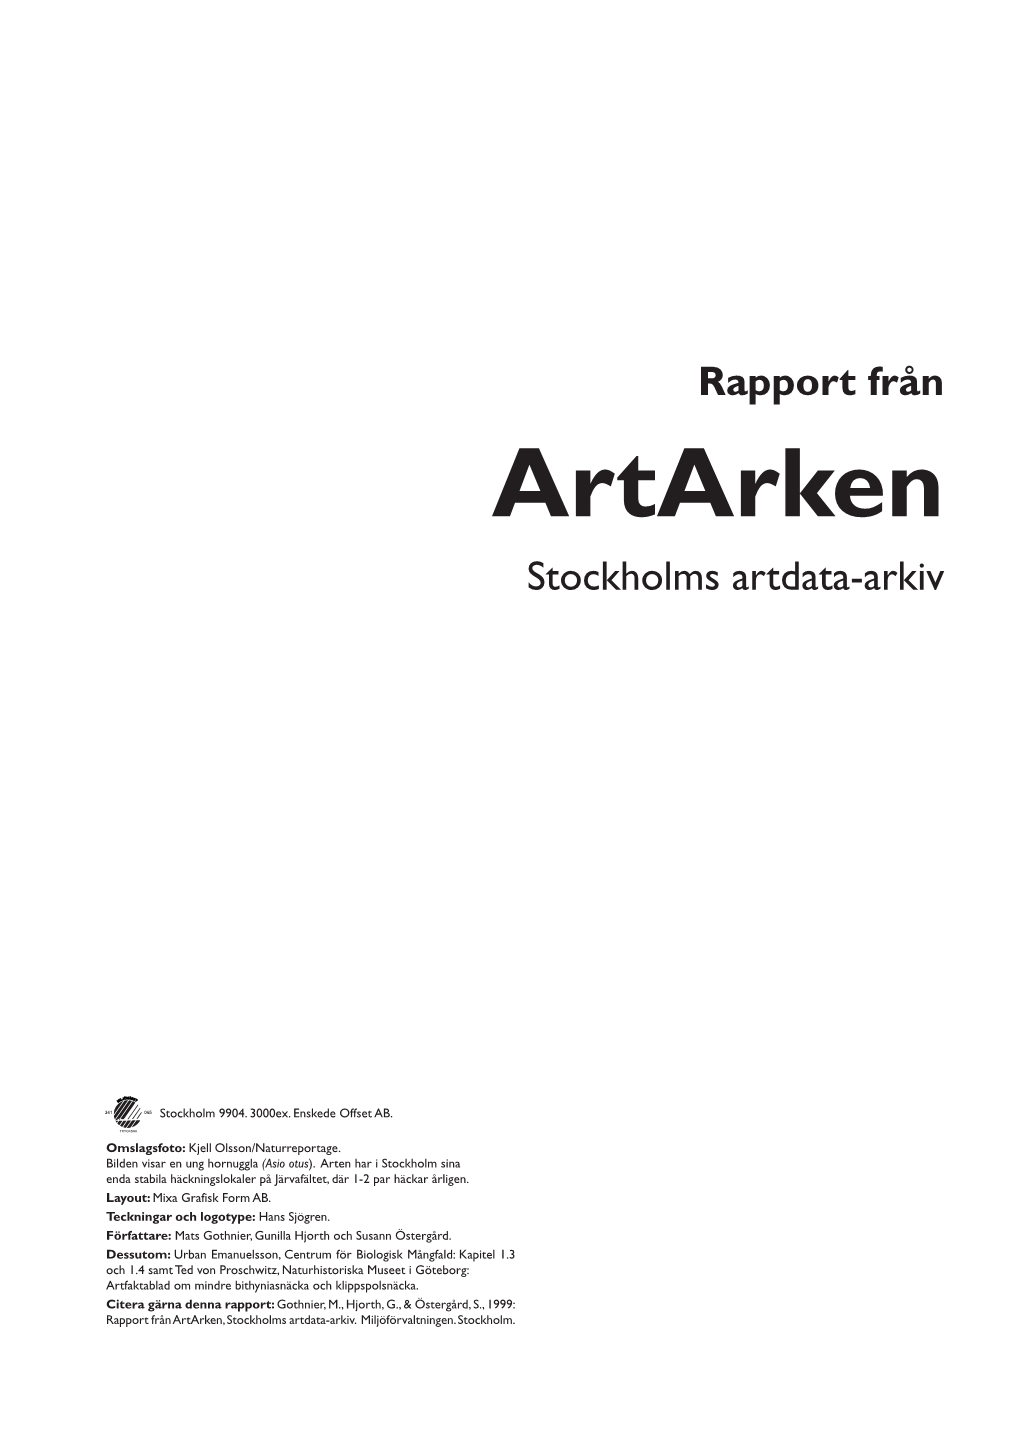 Rapport Från Artarken Stockholms Artdata-Arkiv